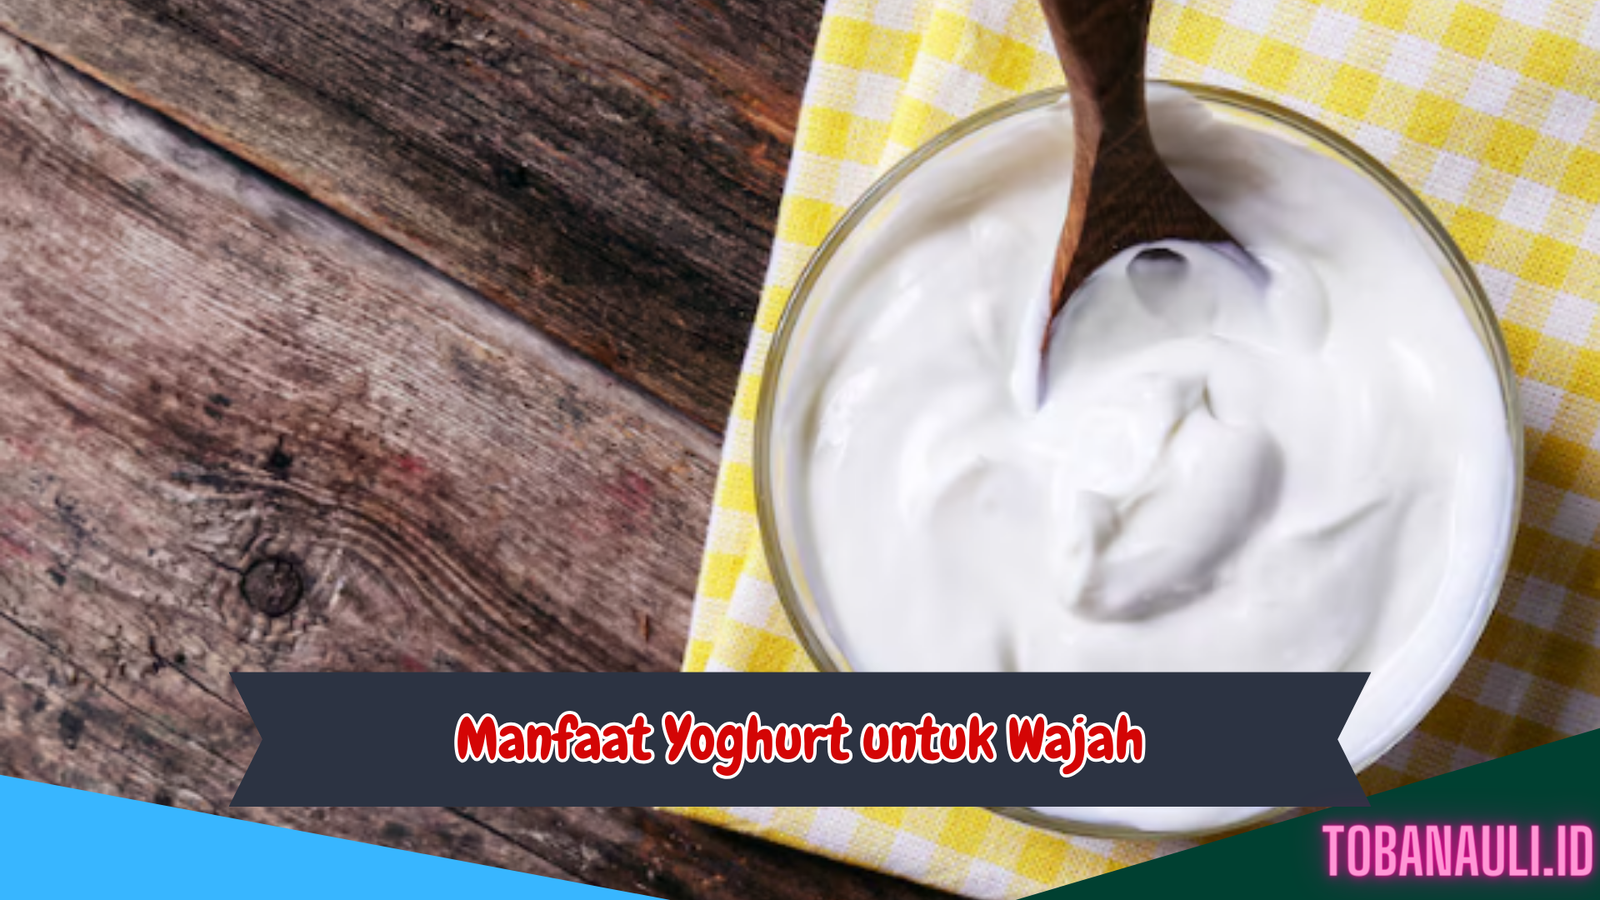 Manfaat Yoghurt untuk Wajah